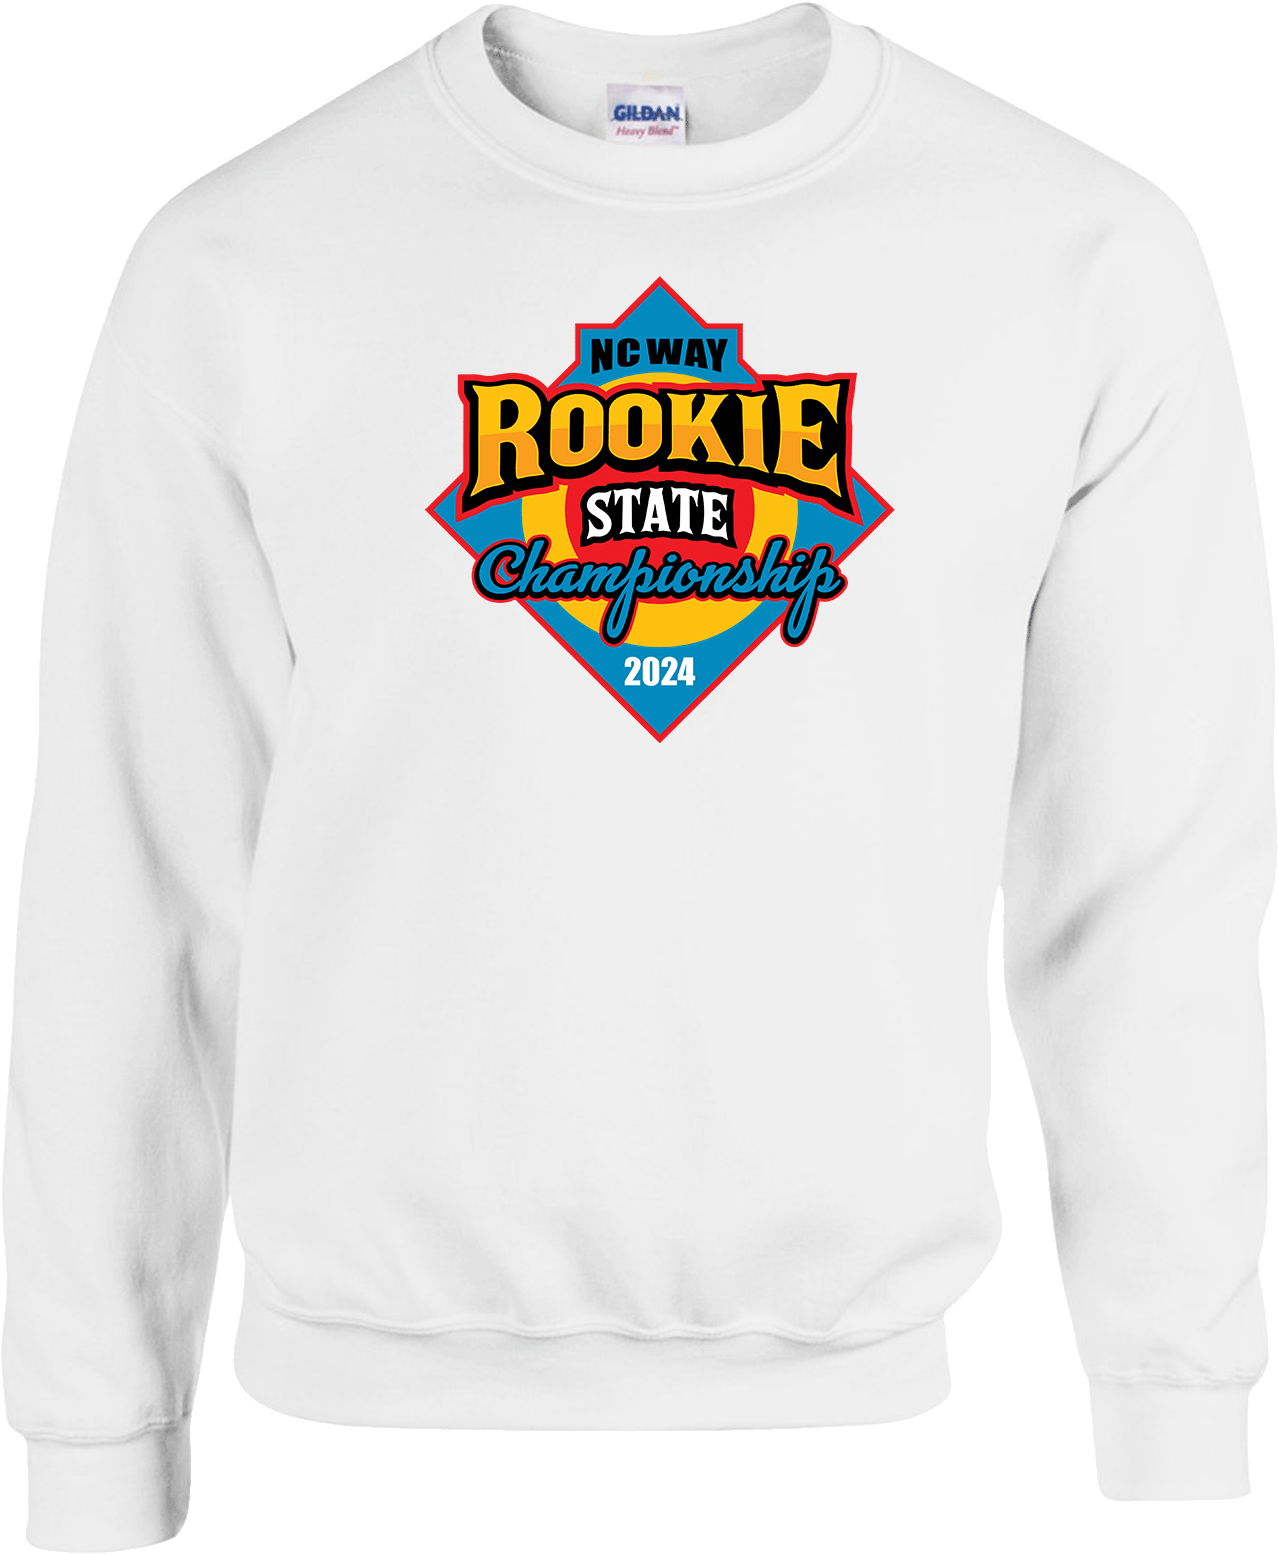 Crew Sweatershirt - 2024 NCWAY Rookie State Championship